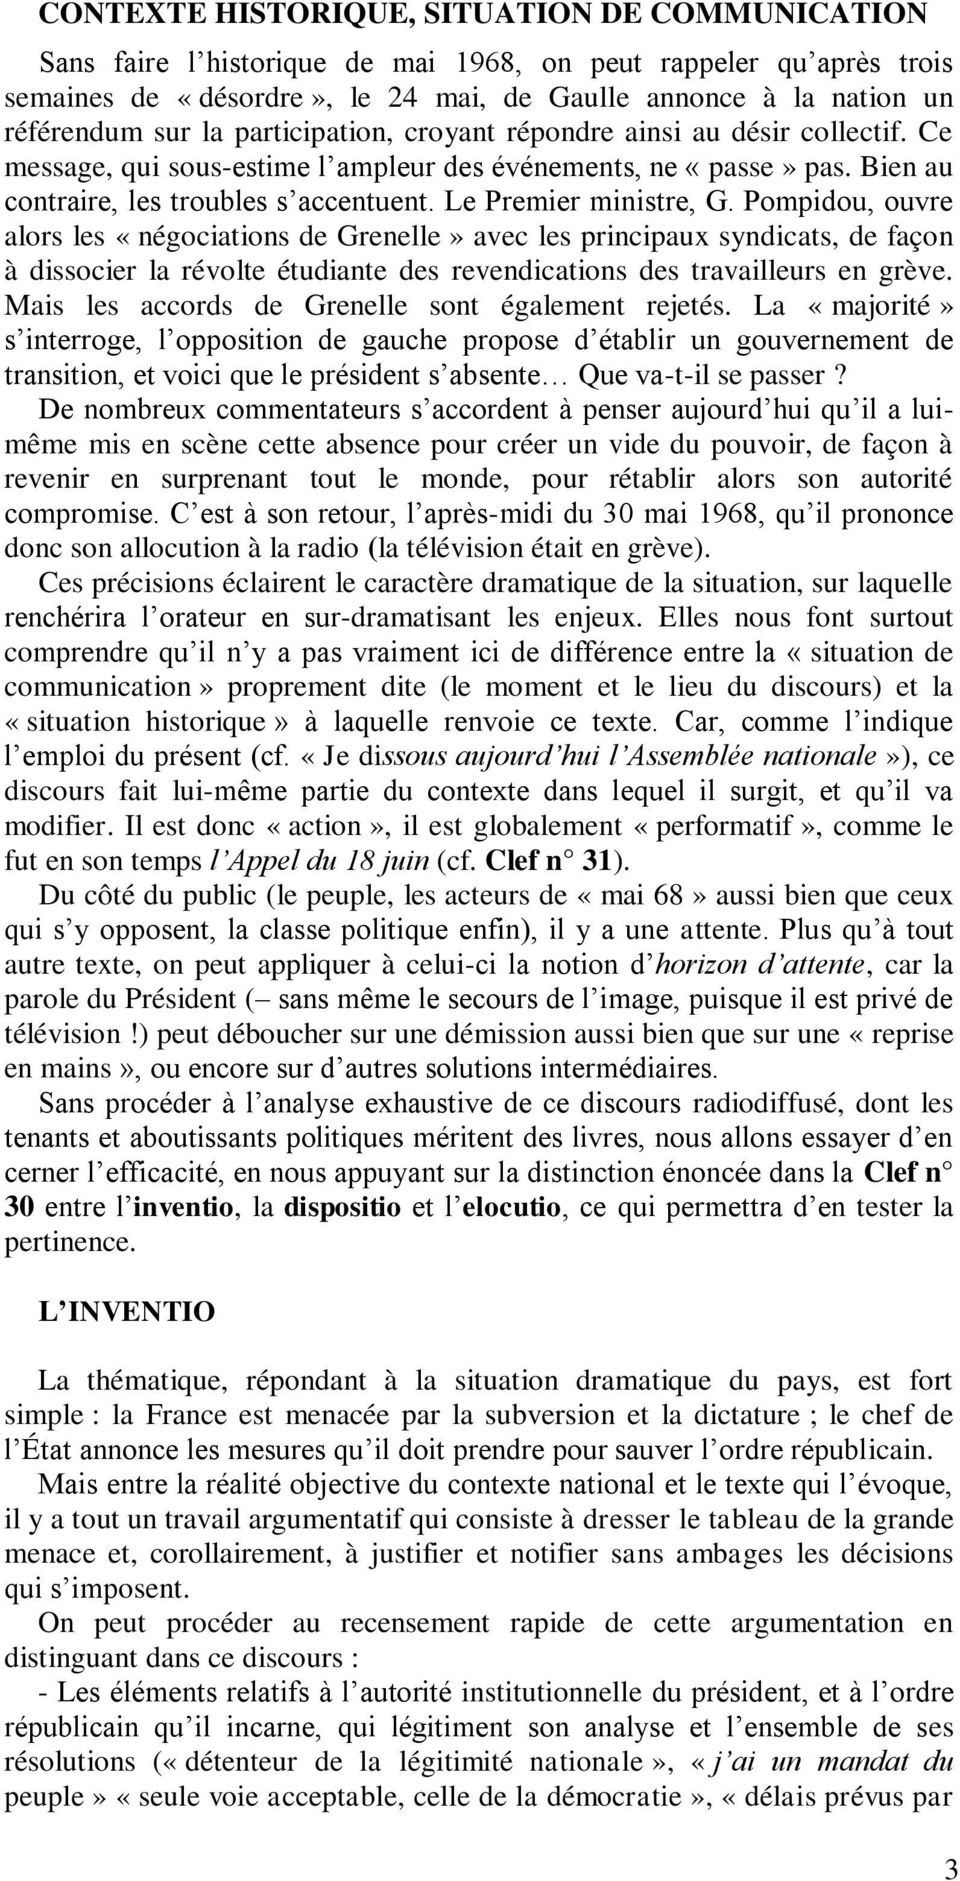 Pompidou, ouvre alors les «négociations de Grenelle» avec les principaux syndicats, de façon à dissocier la révolte étudiante des revendications des travailleurs en grève.